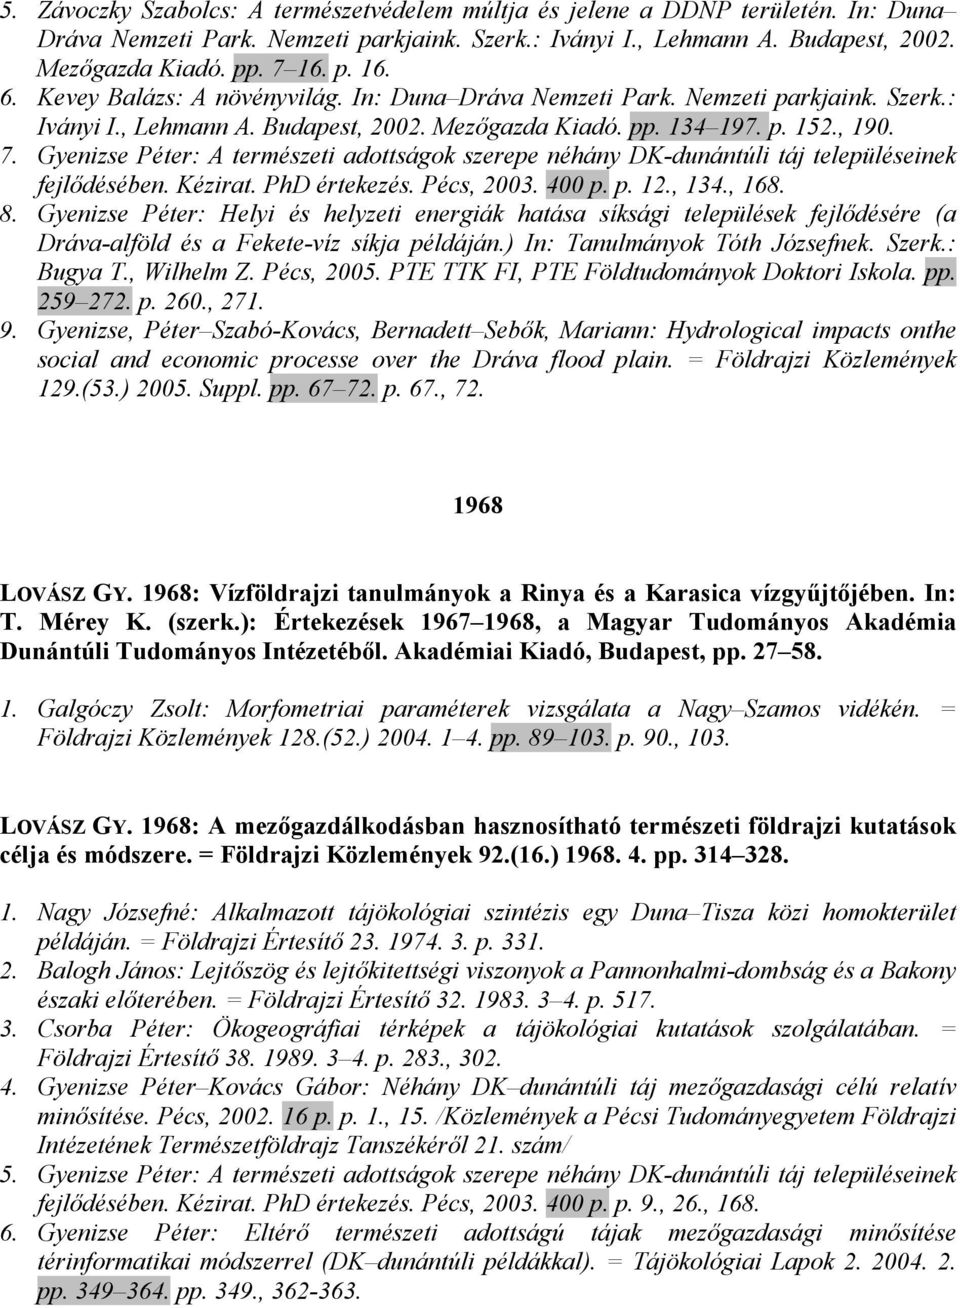 Gyenizse Péter: A természeti adottságok szerepe néhány DK-dunántúli táj településeinek fejlıdésében. Kézirat. PhD értekezés. Pécs, 2003. 400 p. p. 12., 134., 168. 8.